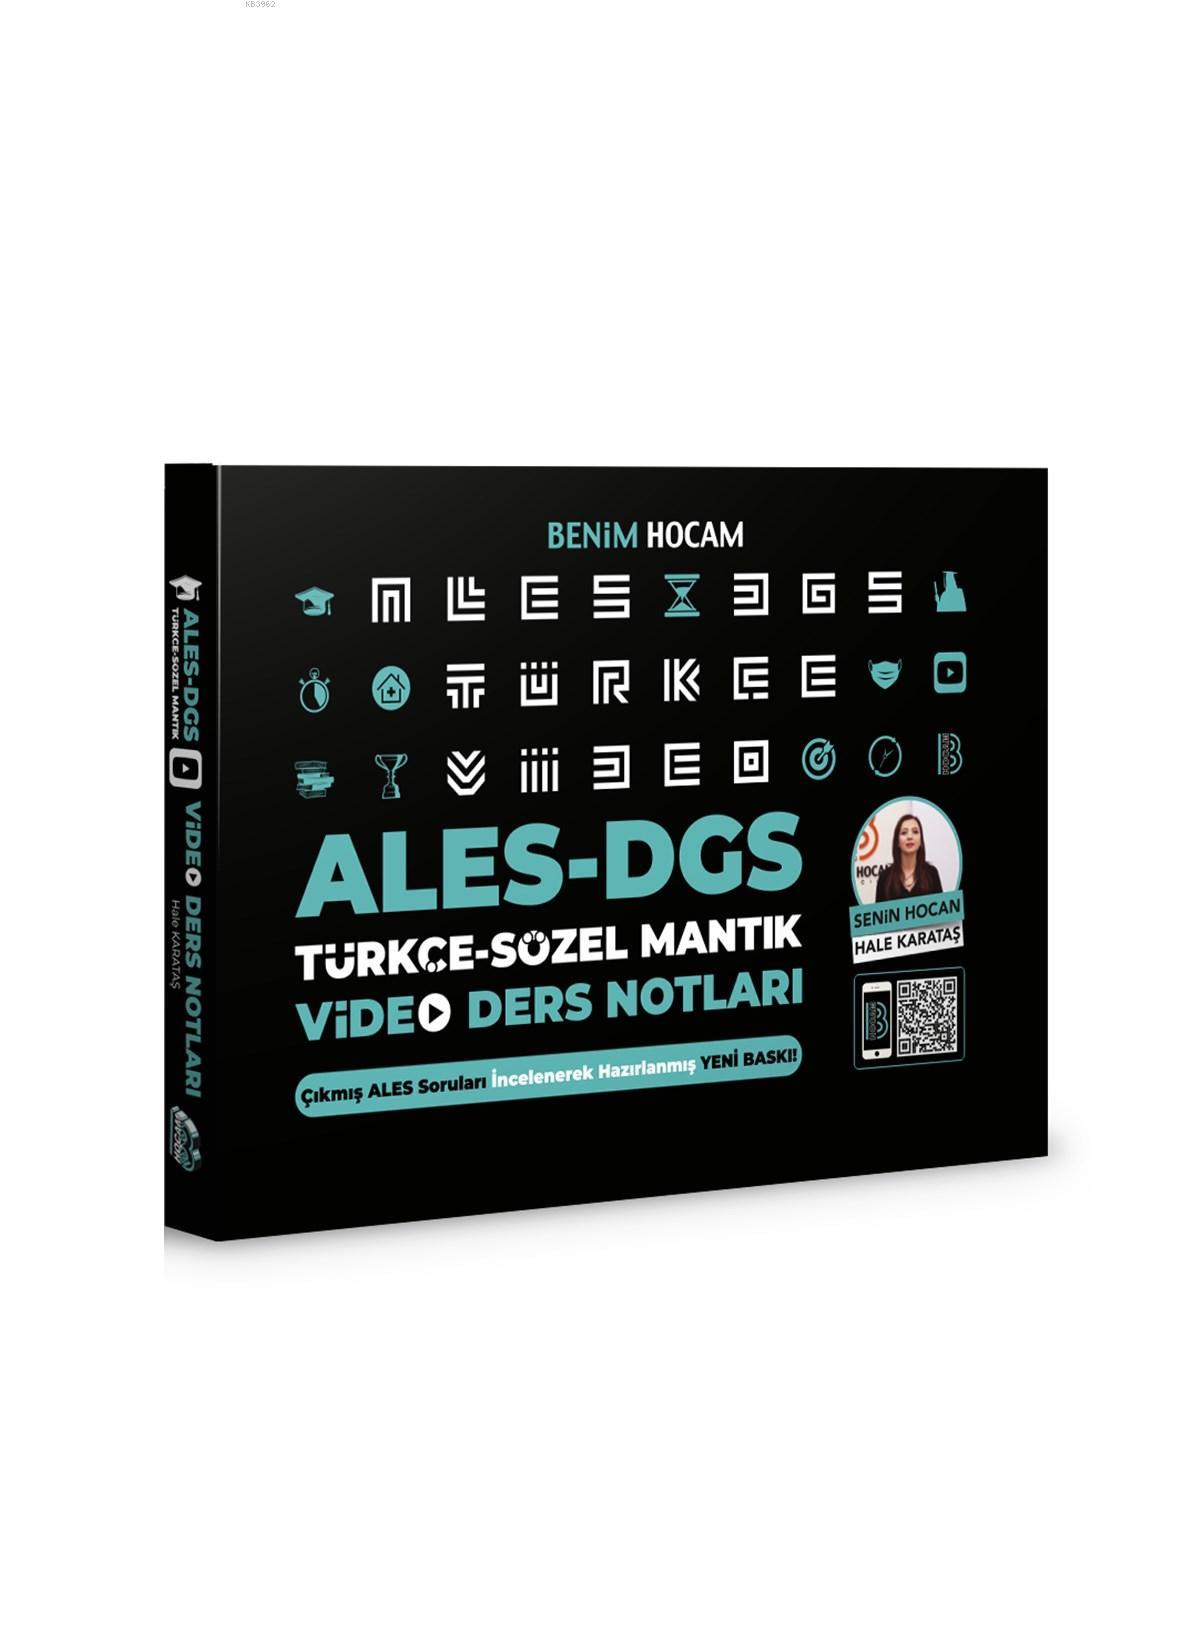 2021 ALES DGS Türkçe - Sözel Mantık Video Ders Notları Benim Hocam Yayınları